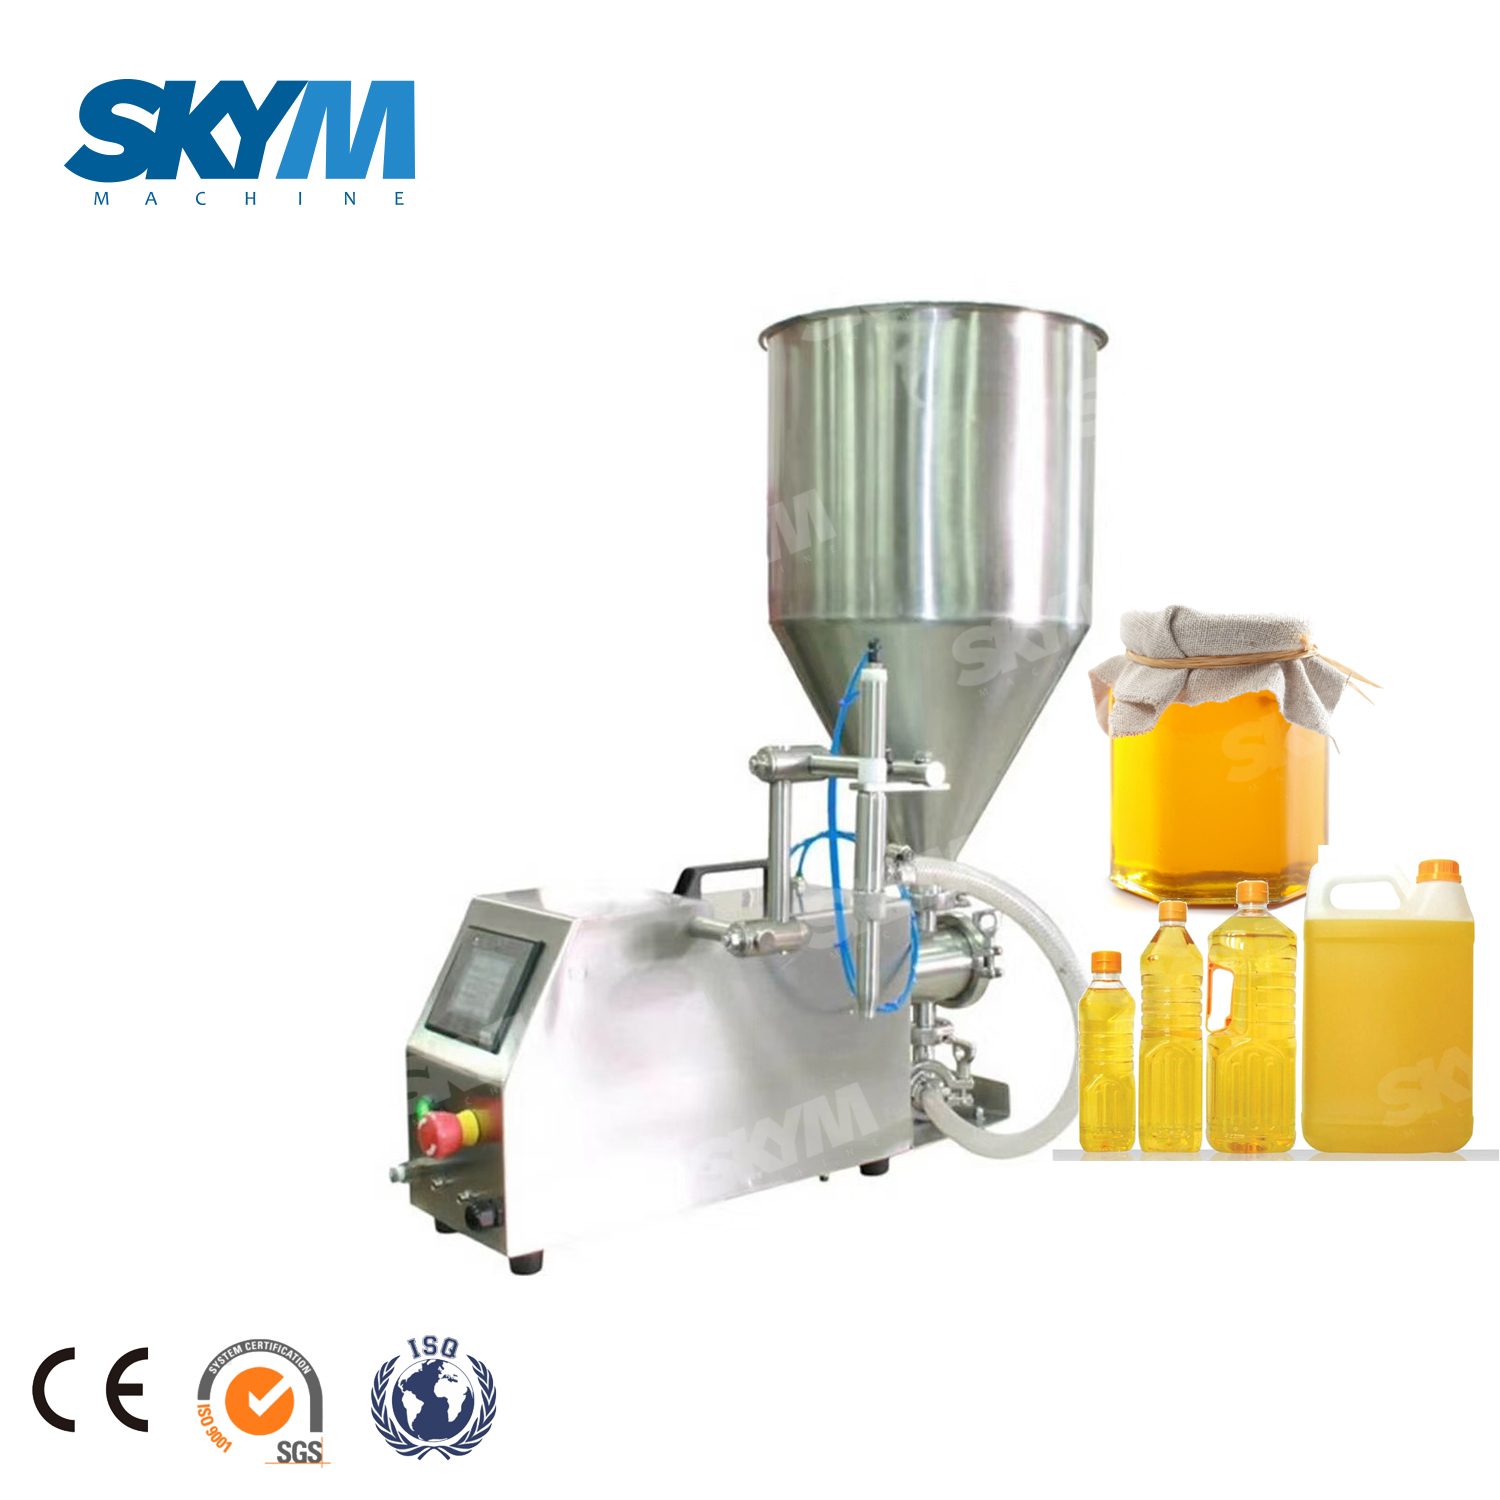 Machine de remplissage semi-automatique manuelle d'huile comestible / de miel / récipients en verre